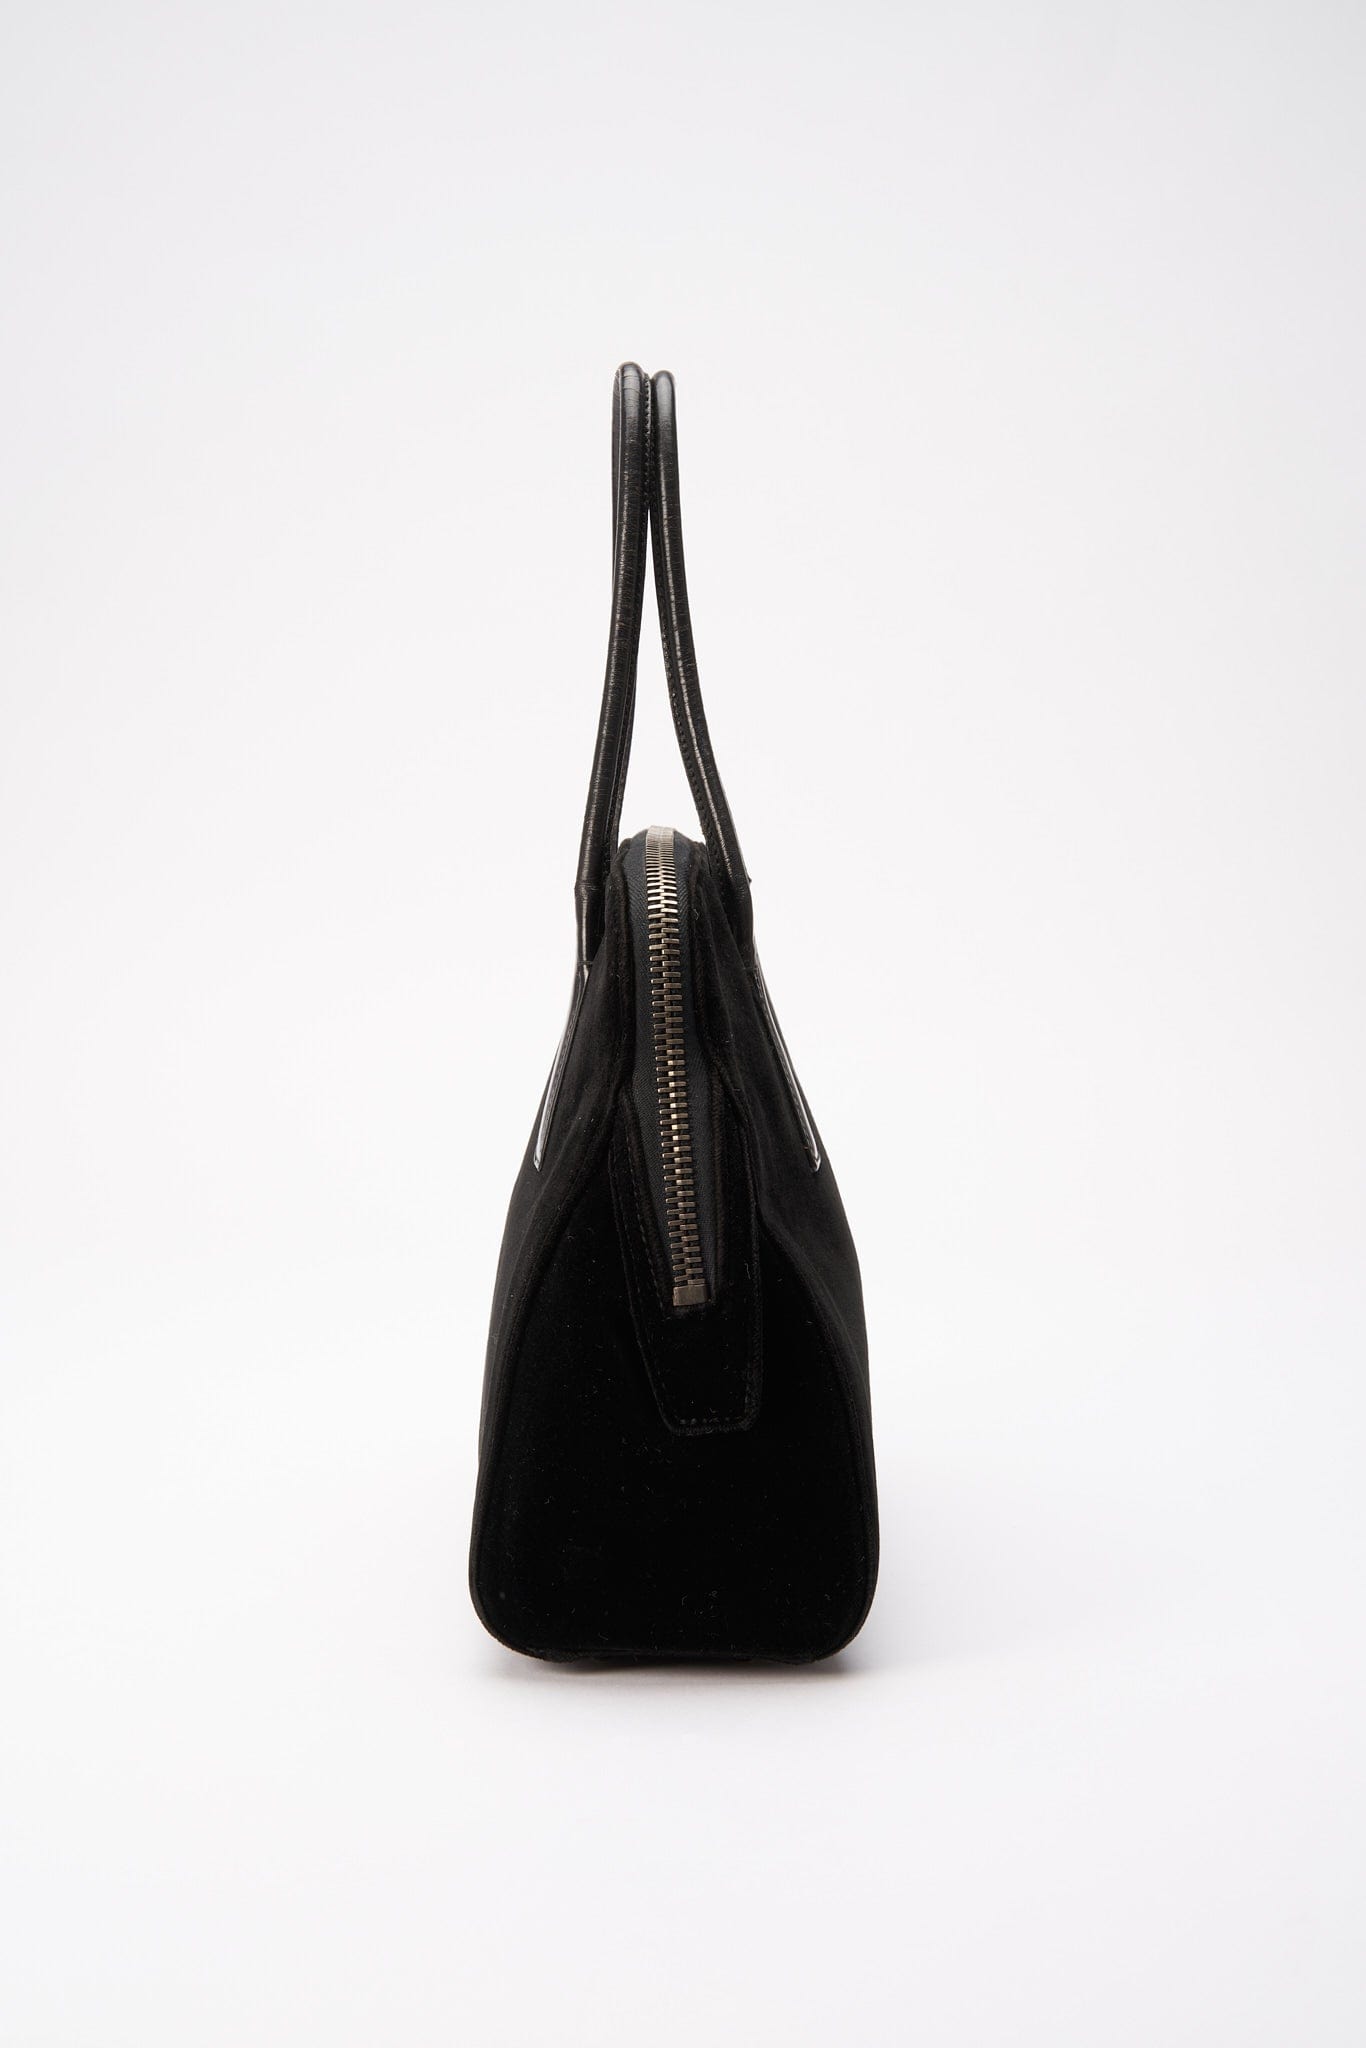 Prada Black Velvet Shoulder Bag with Leather Handles